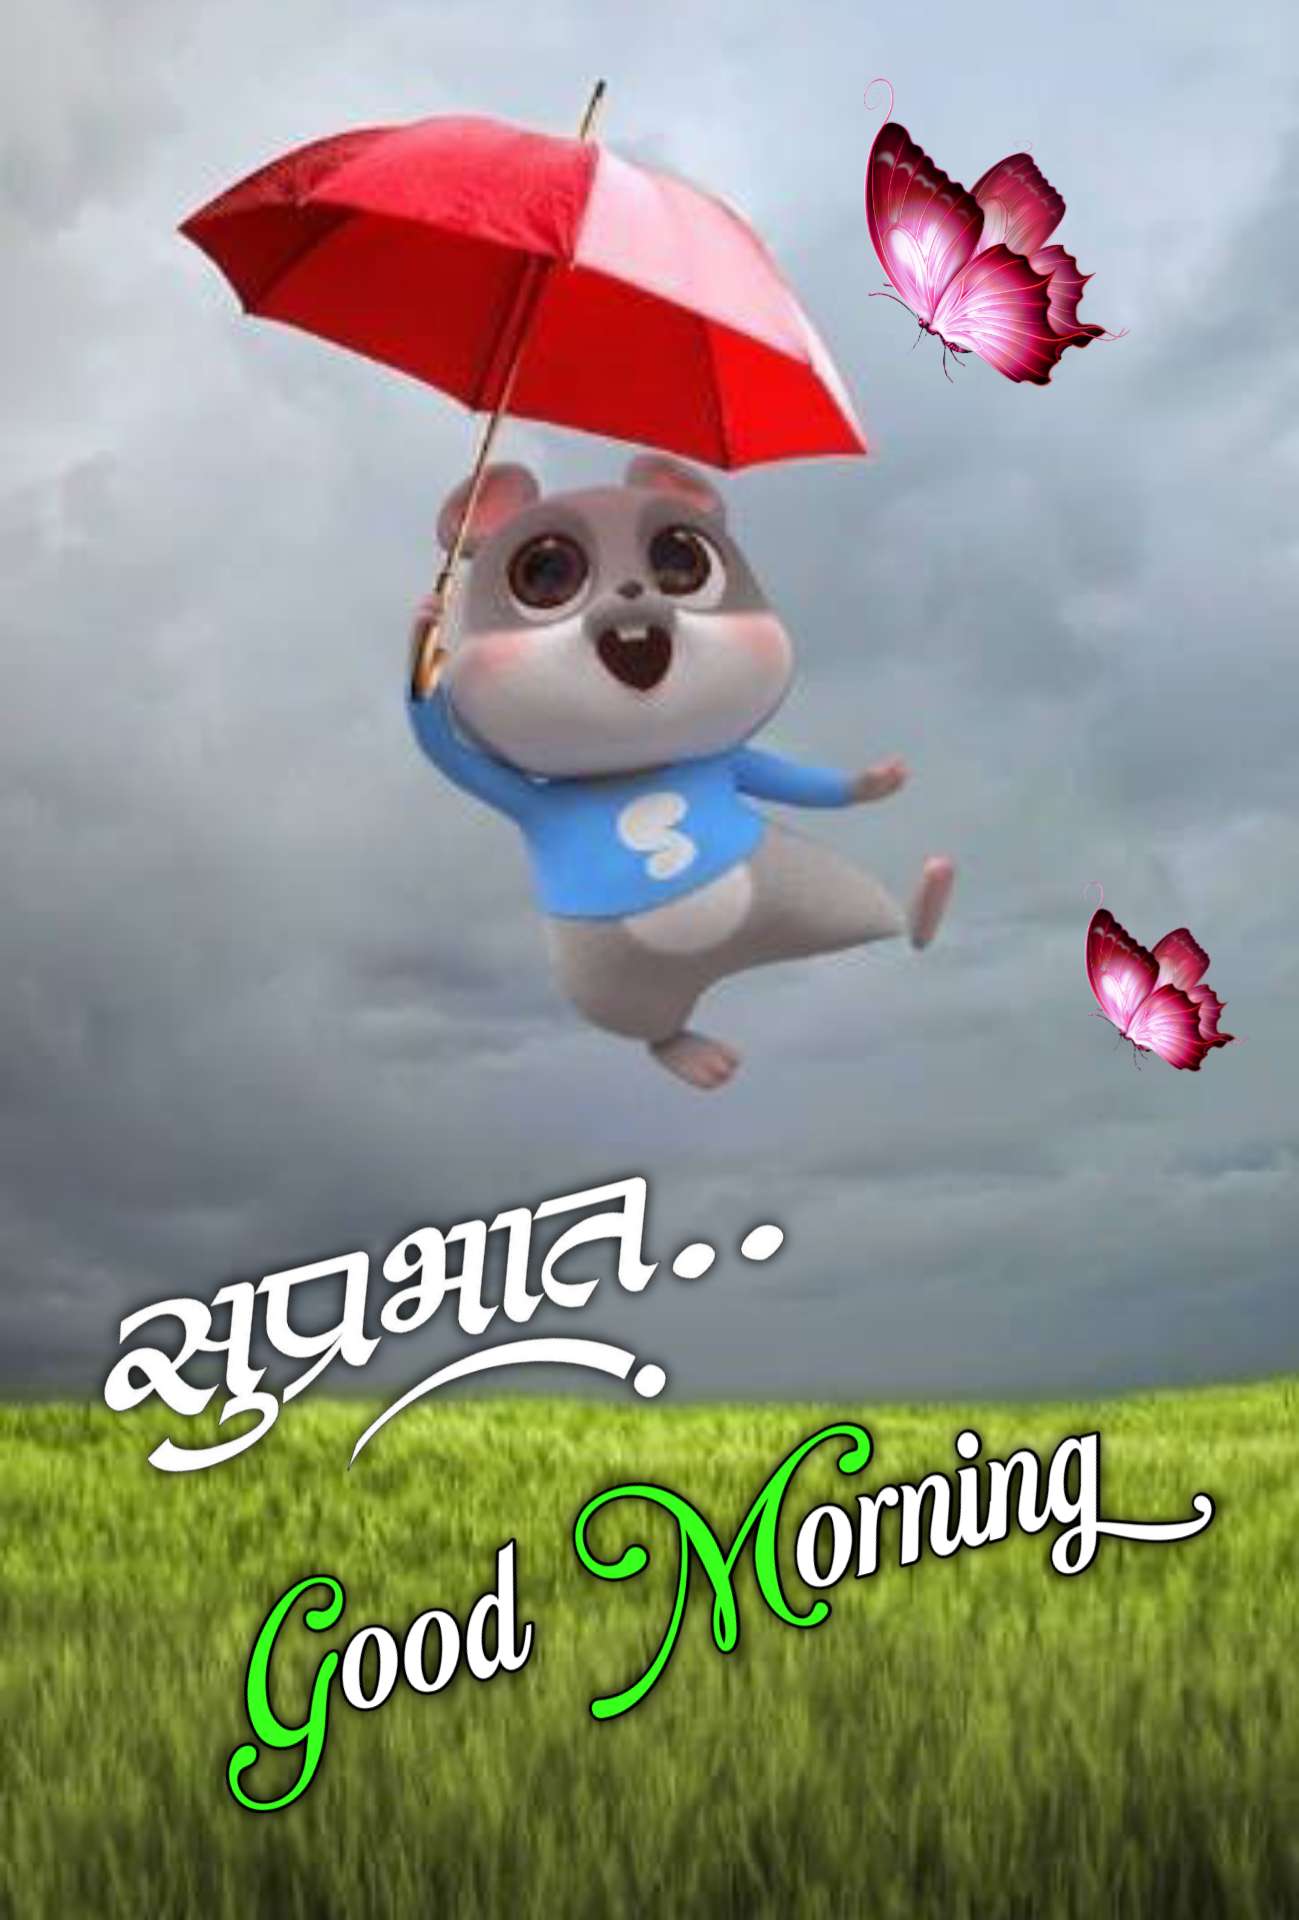 Good Morning Hindi wallpaper ()